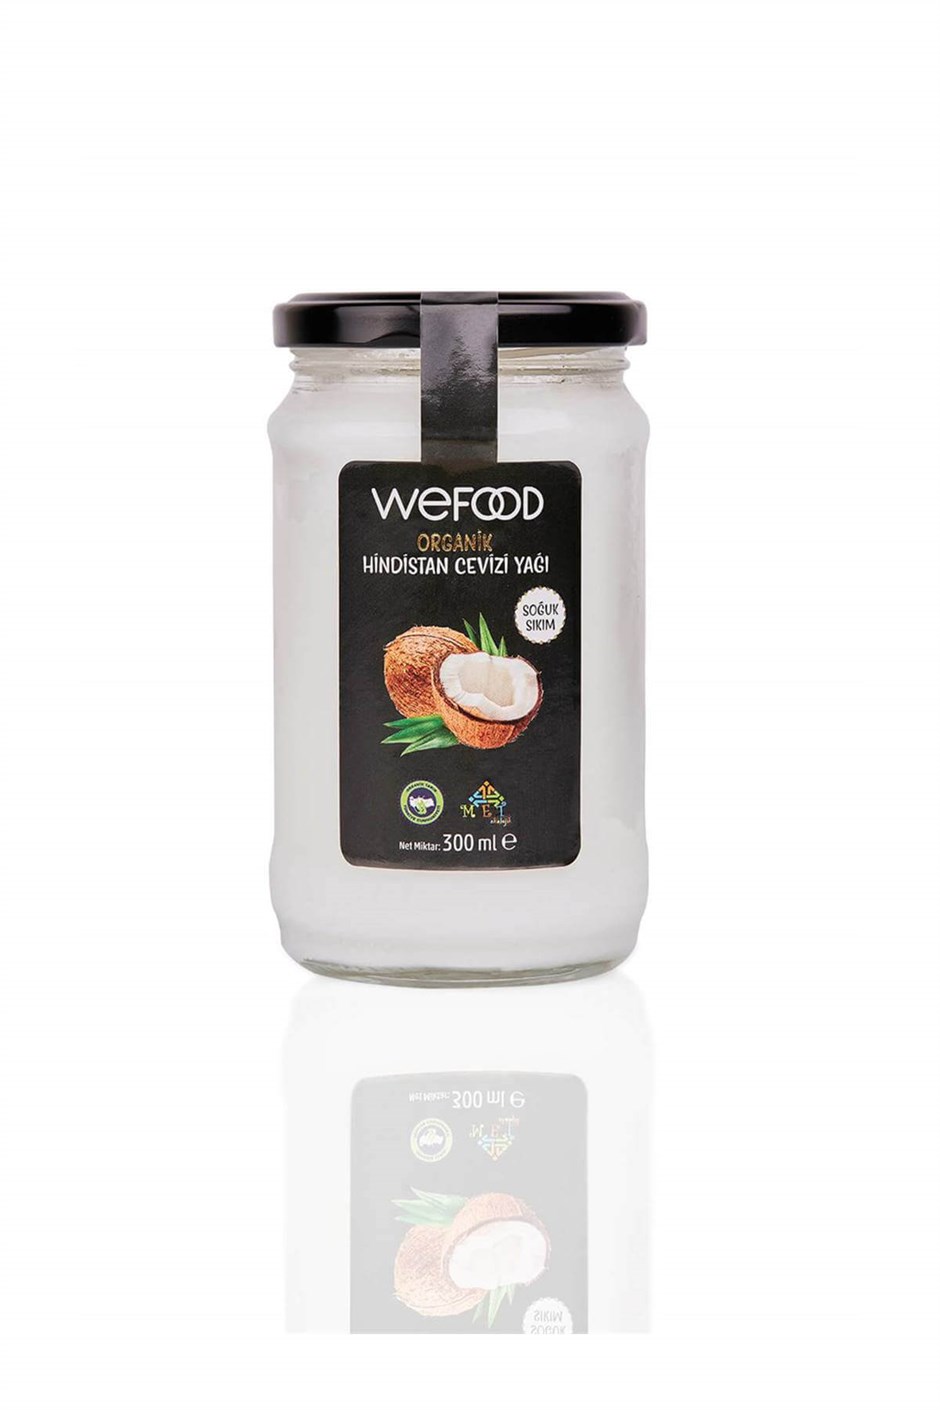 Wefood Organik Hindistan Cevizi Yağı 300 ml (Soğuk Sıkım)